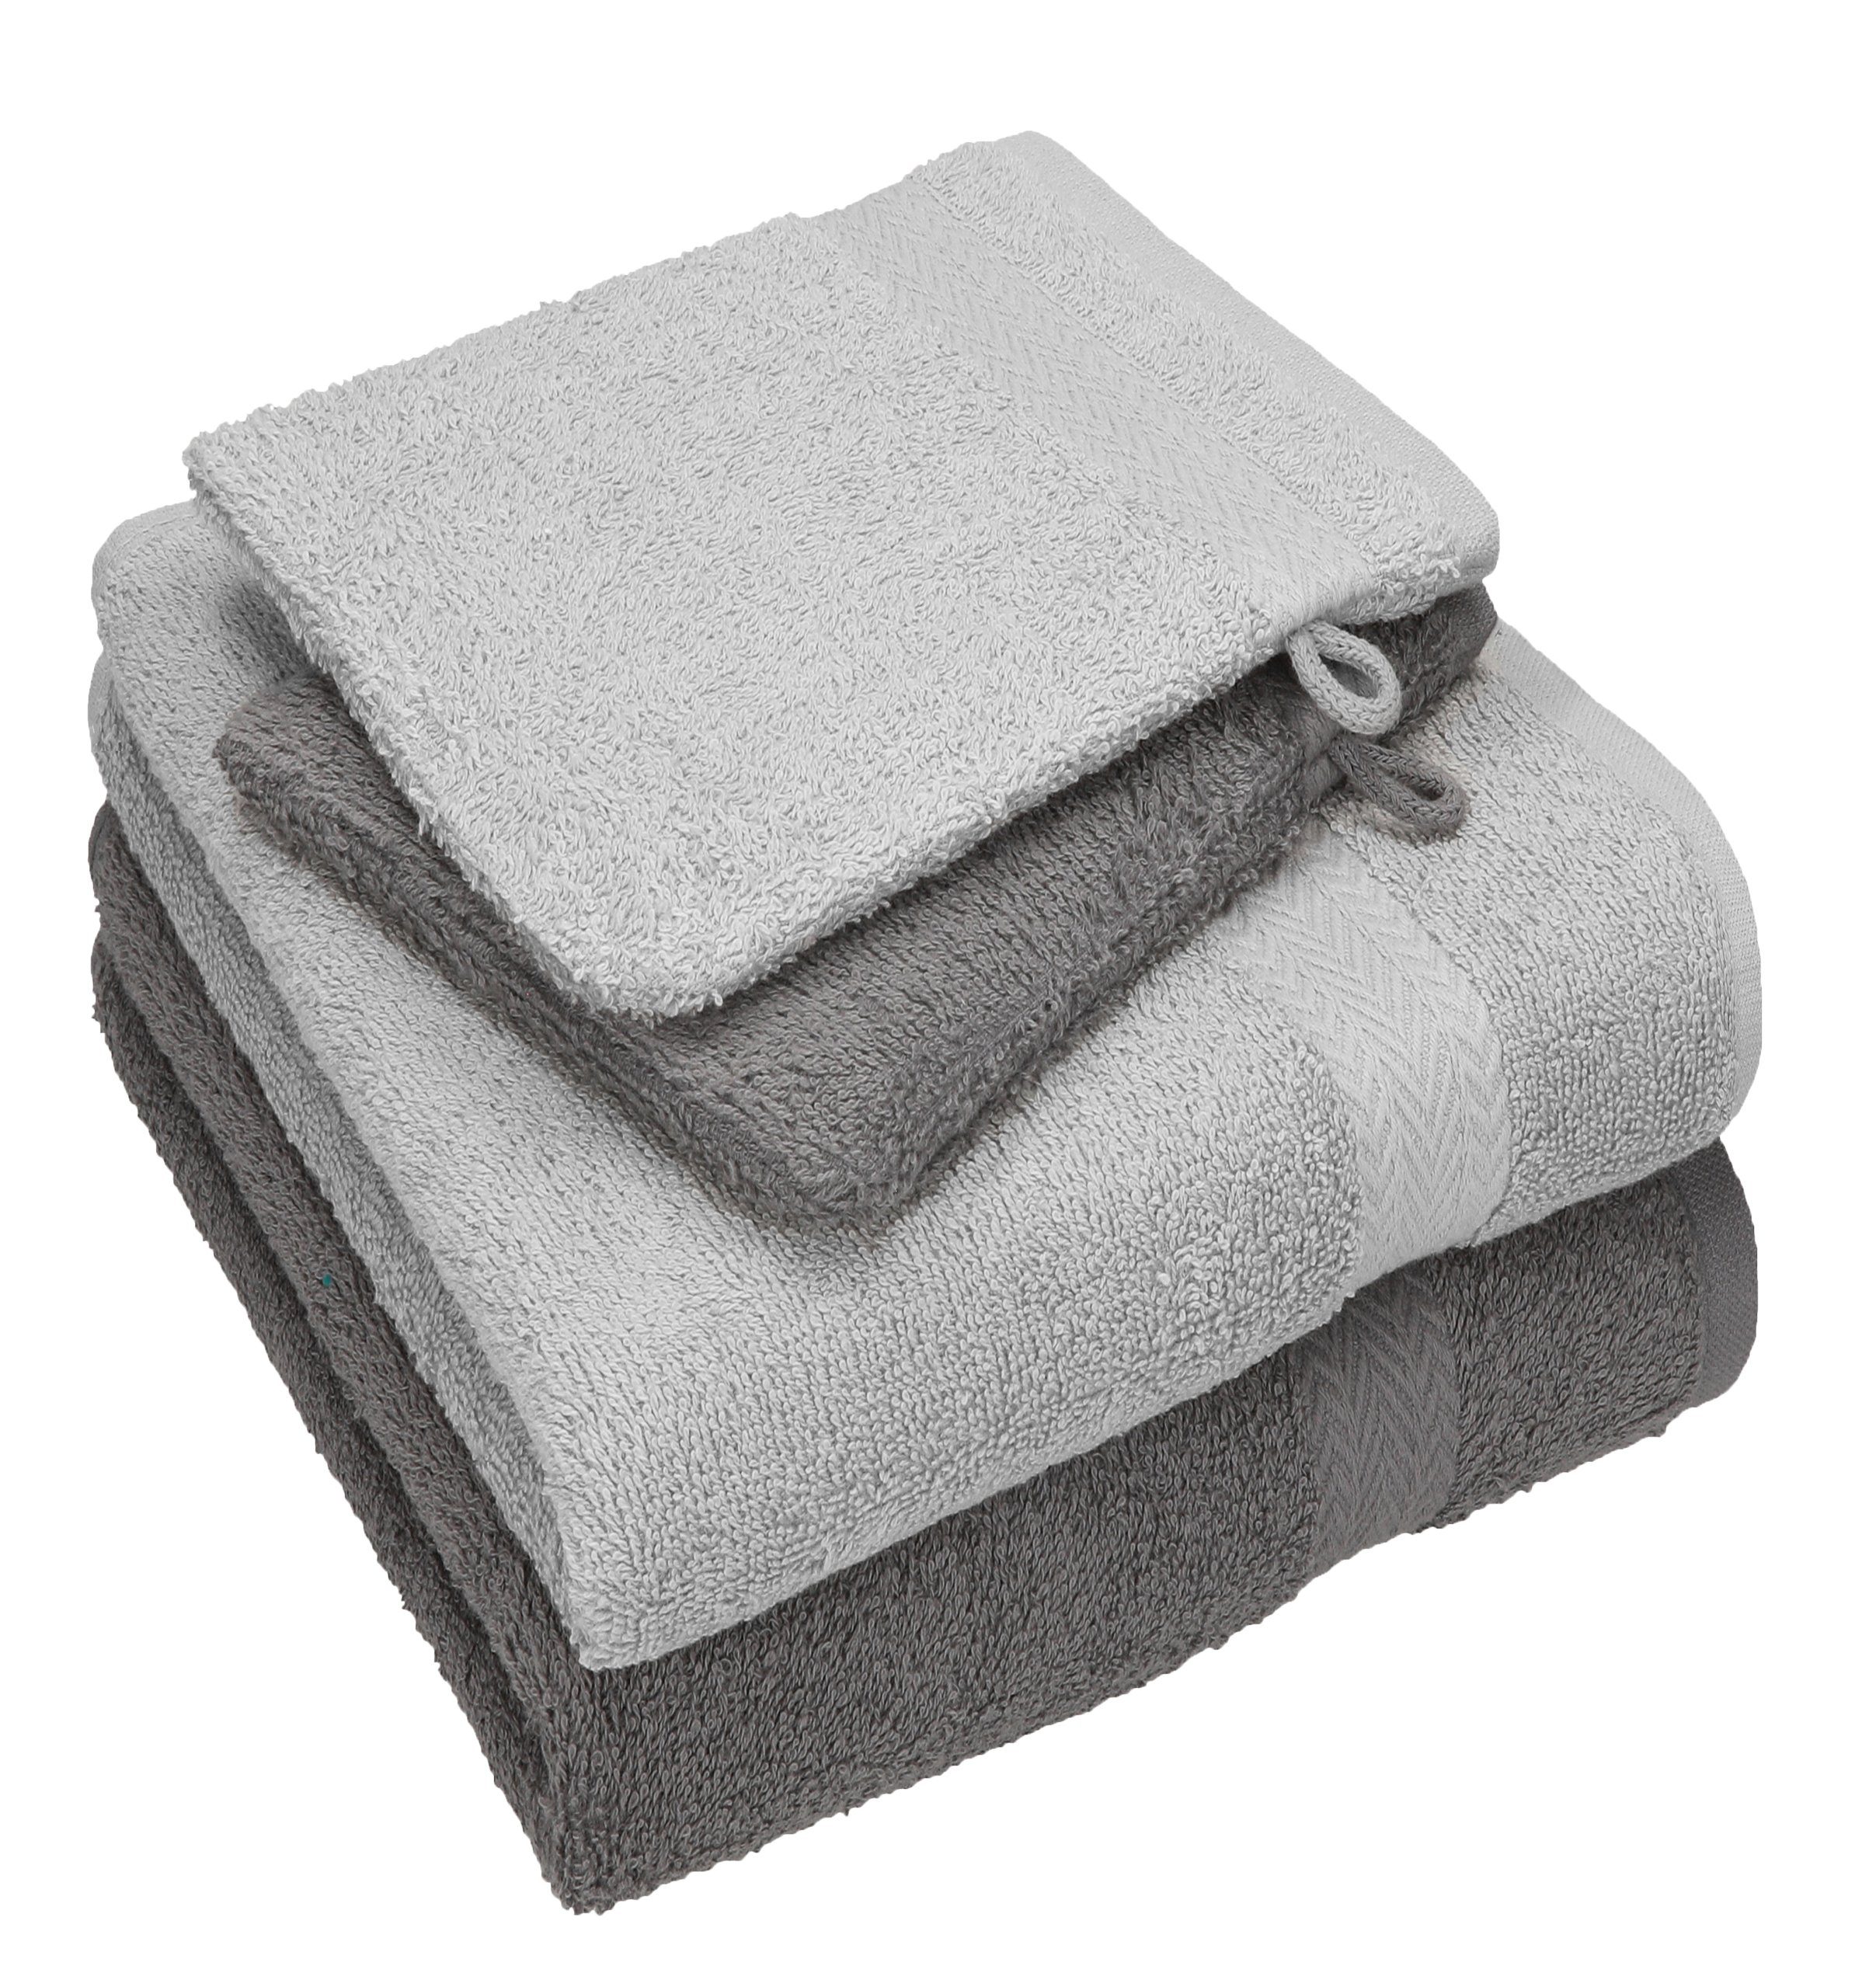 Betz Handtuch Set 4 Happy Handtücher Set 100% 2 Baumwolle silber Pack 2 grau Waschhandschuhe, TLG. 100% - Baumwolle Handtuch anthrazit grau